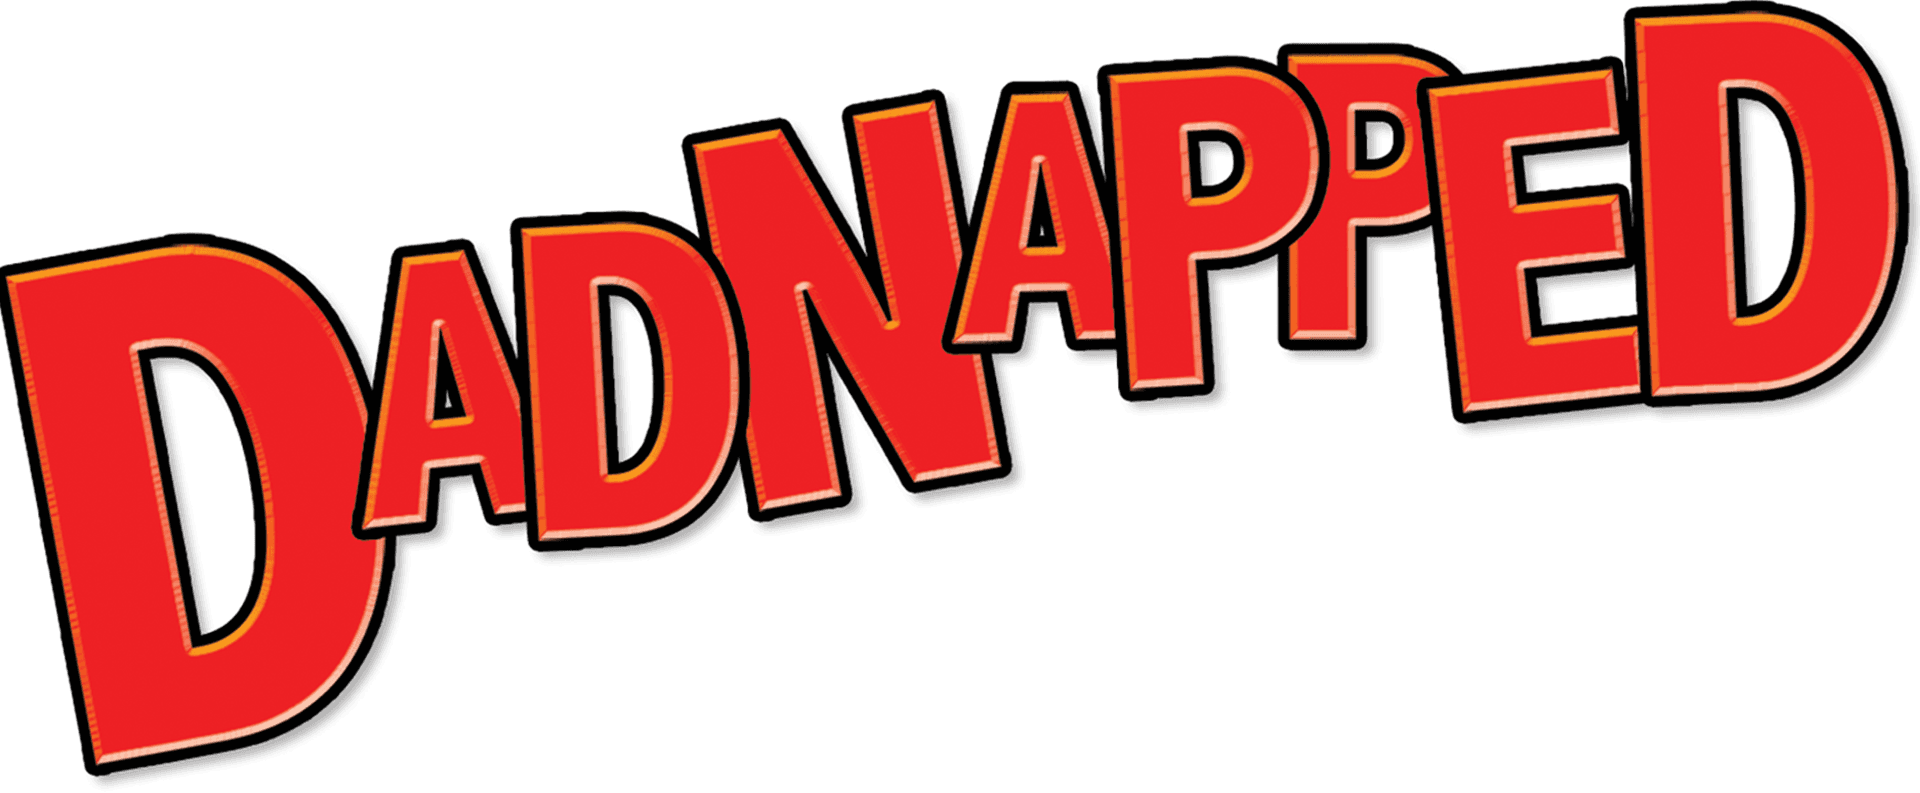 Dadnapped logo